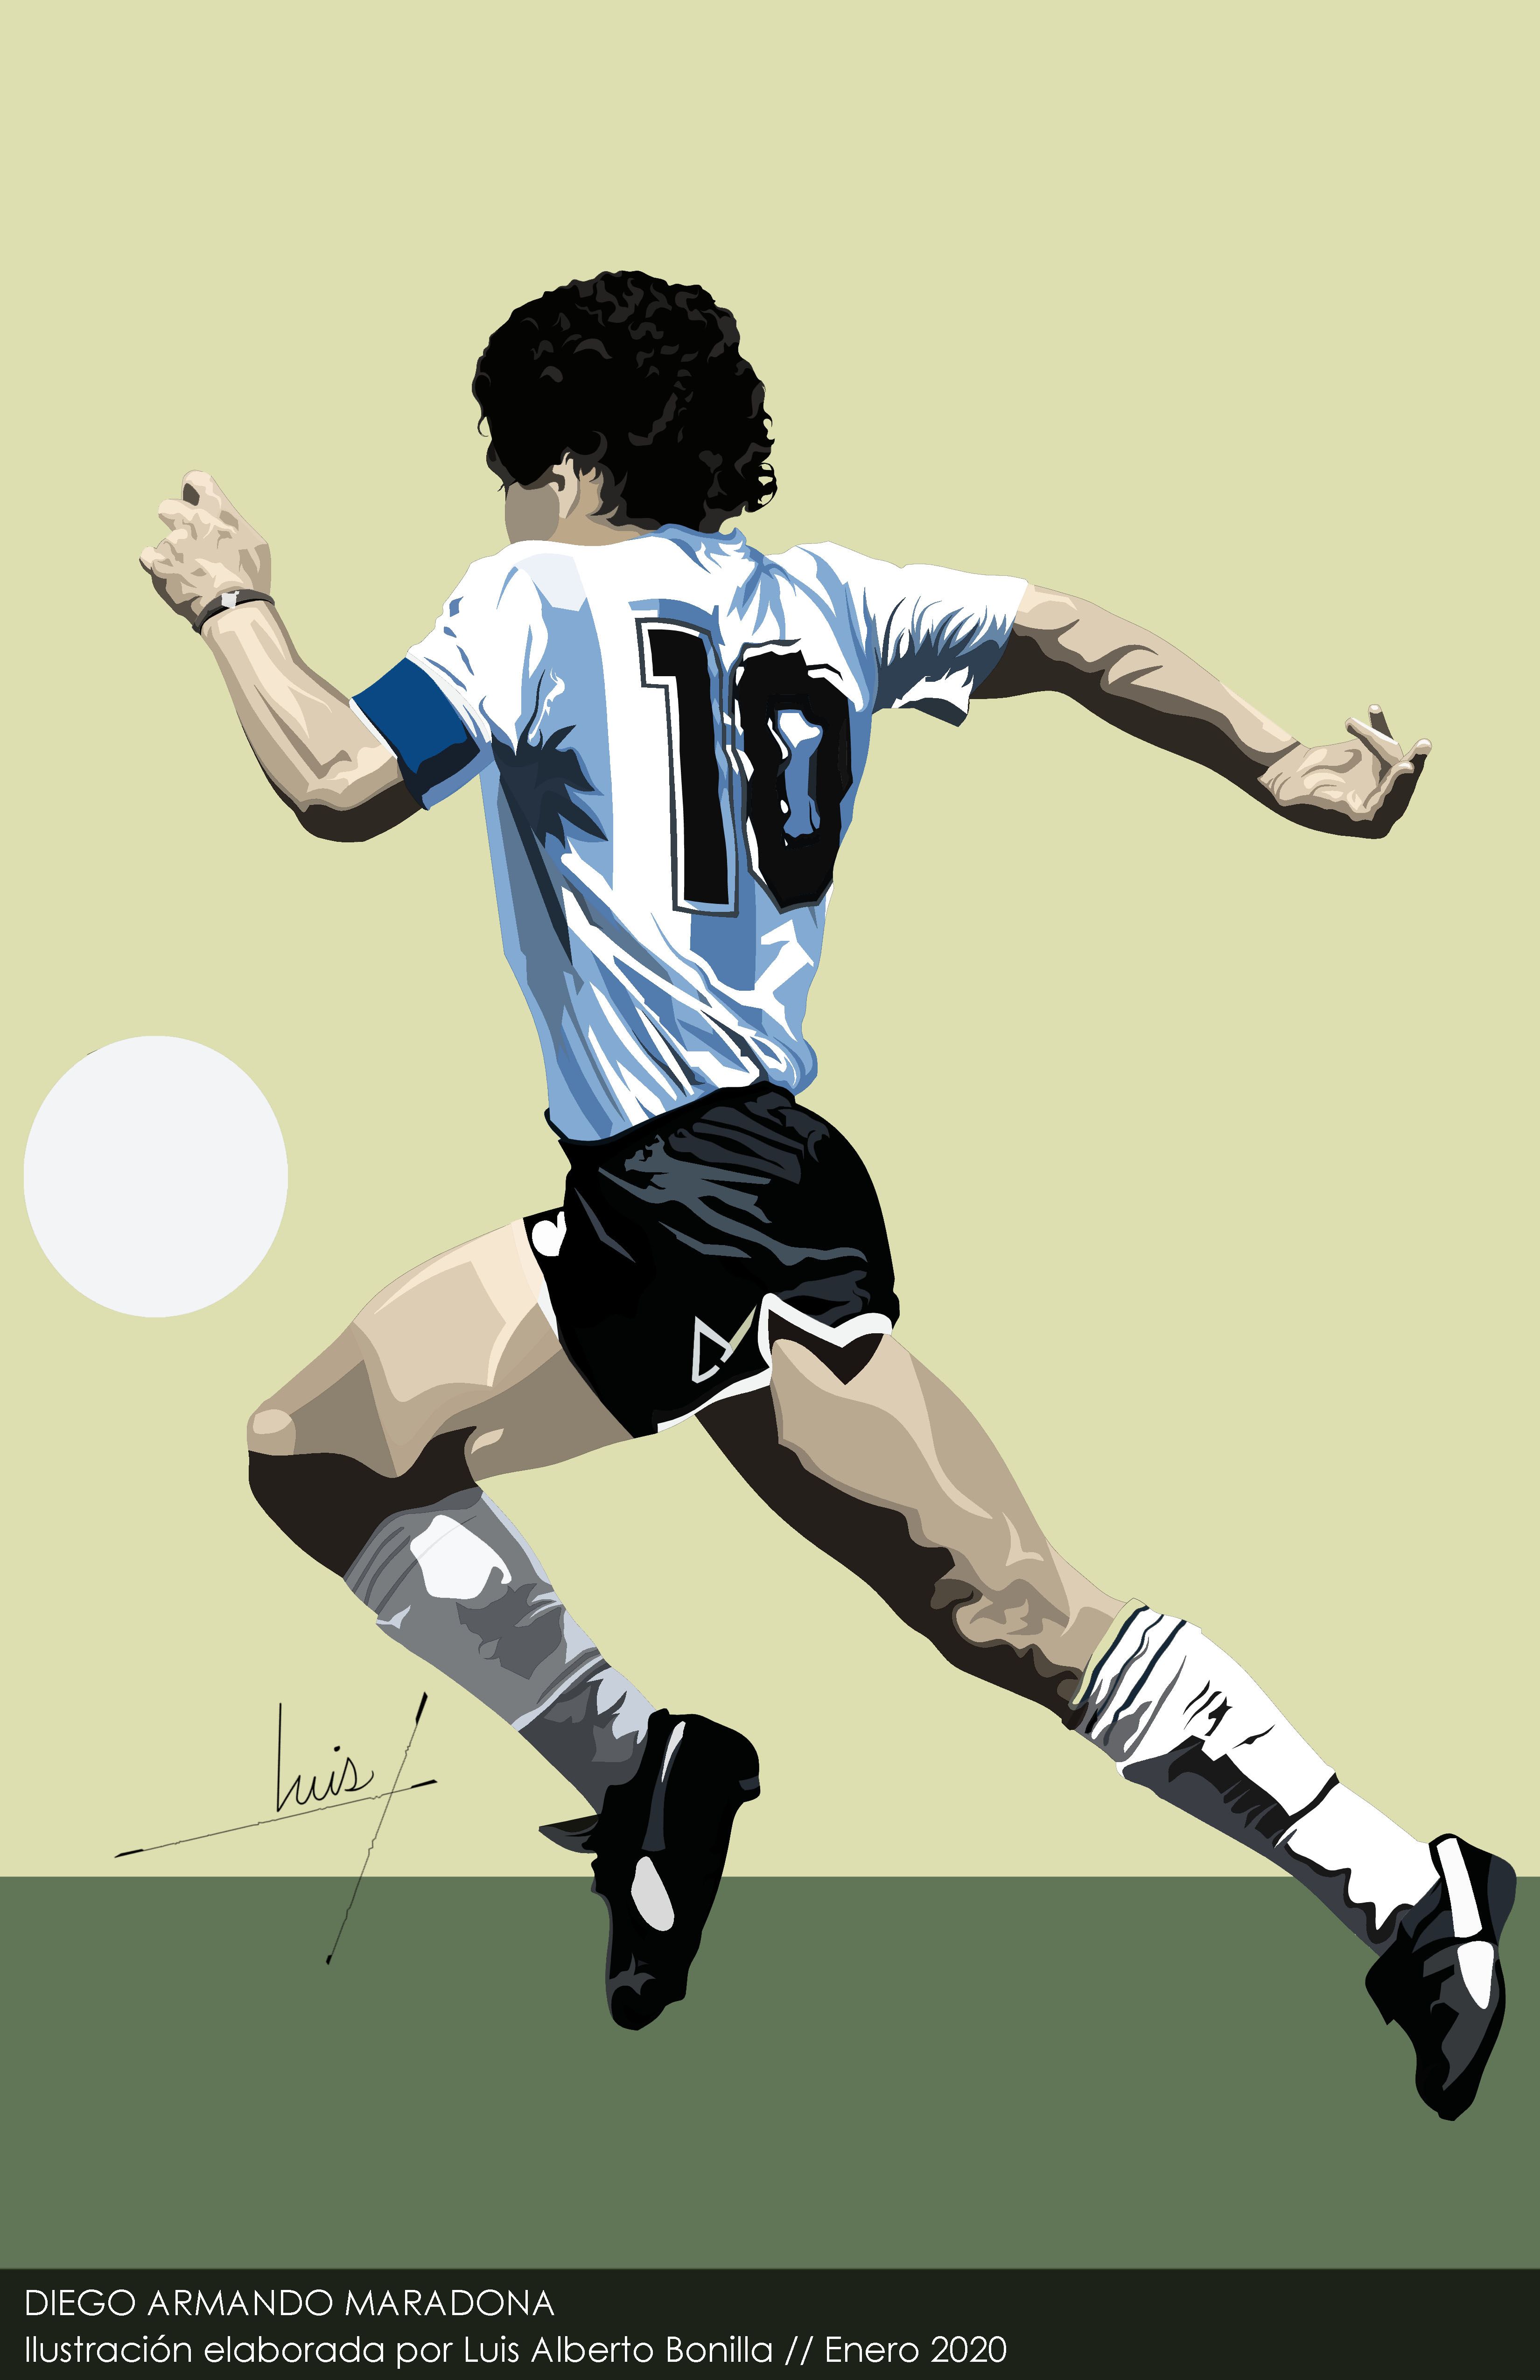 Diego Armando Maradona en 2020. Fotos de fútbol, Fotografía de fútbol, Dibujos de futbol